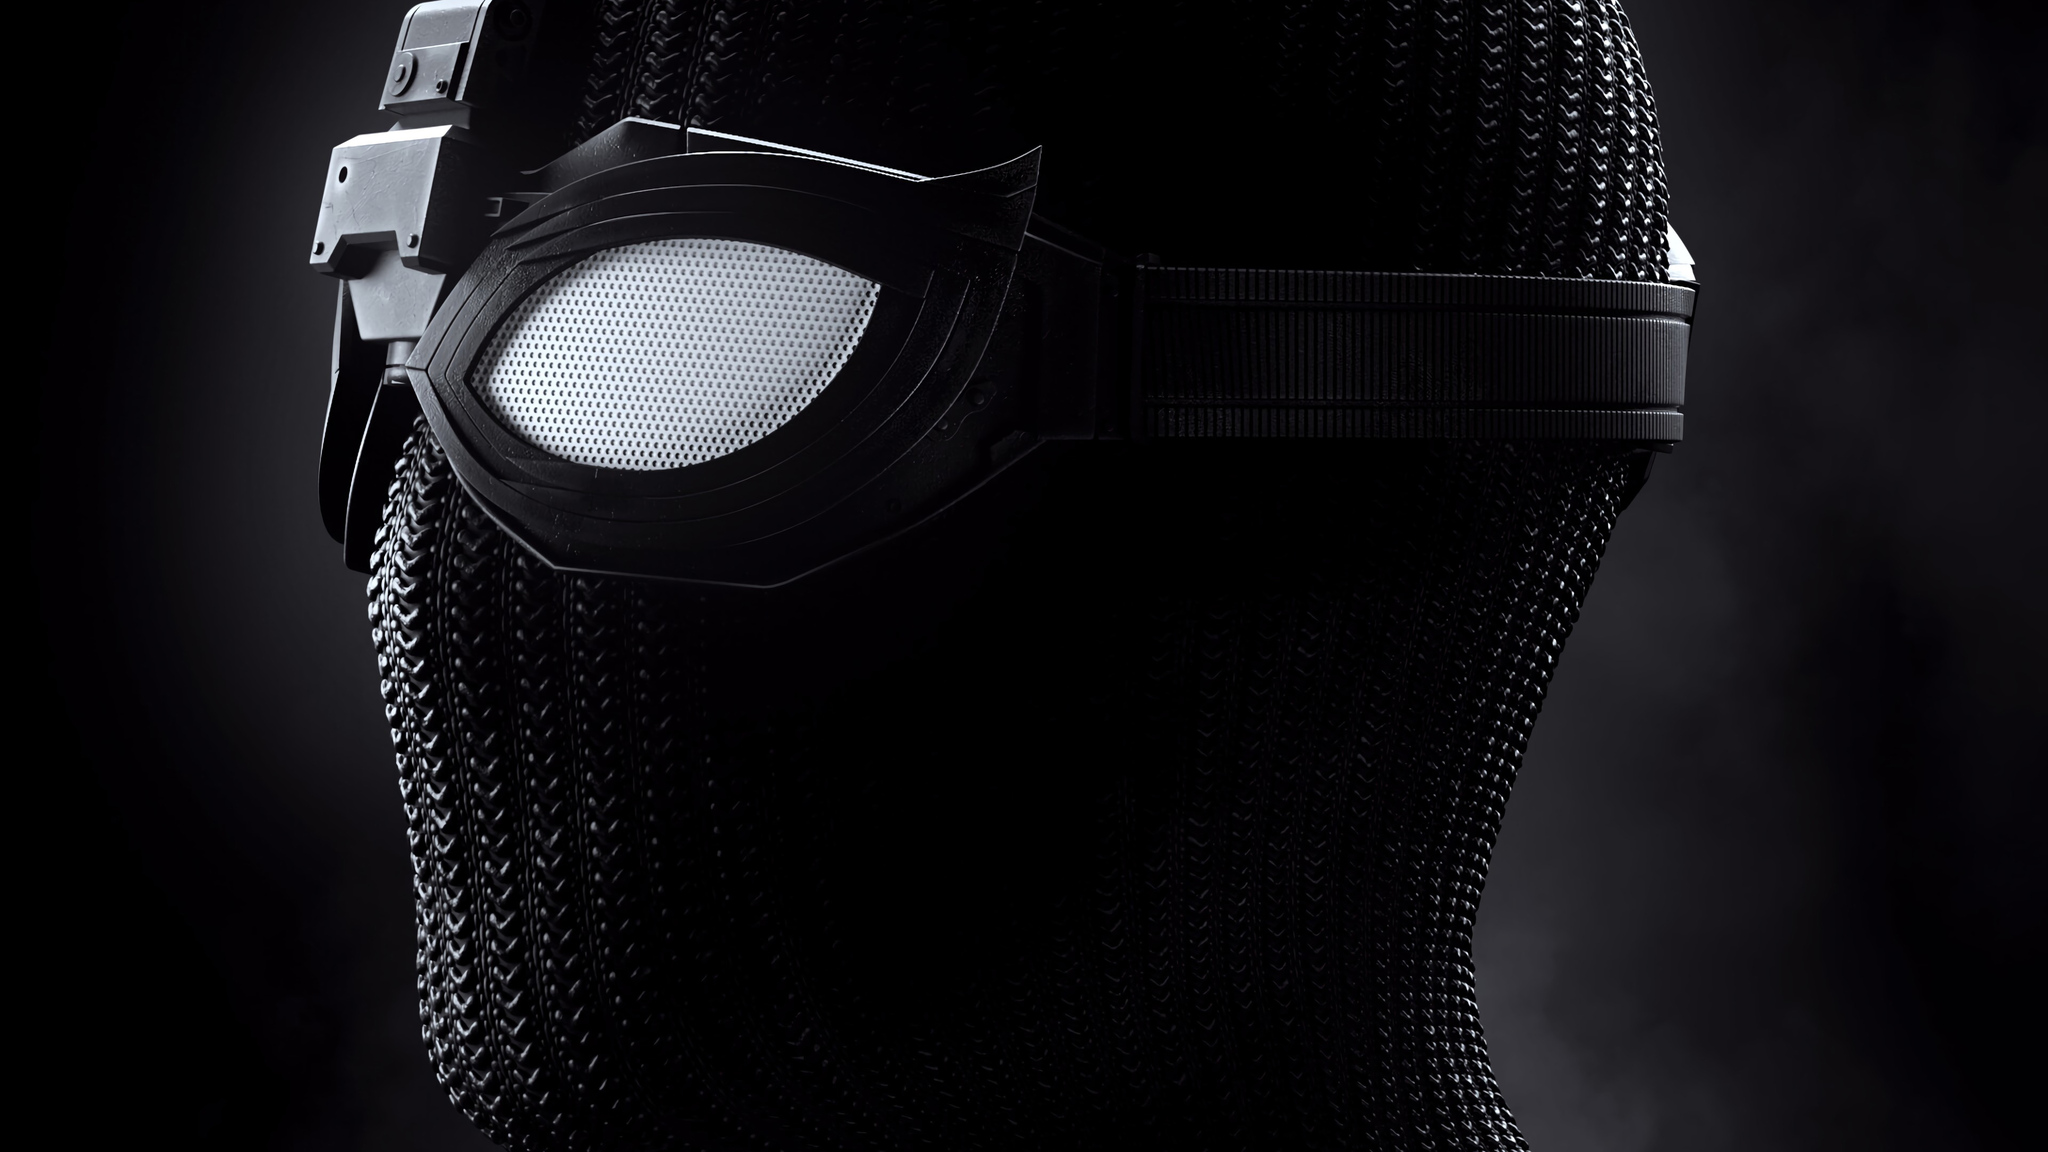 2048x1152 Black Mask Spiderman 2048x1152 Resolution Hd 4k